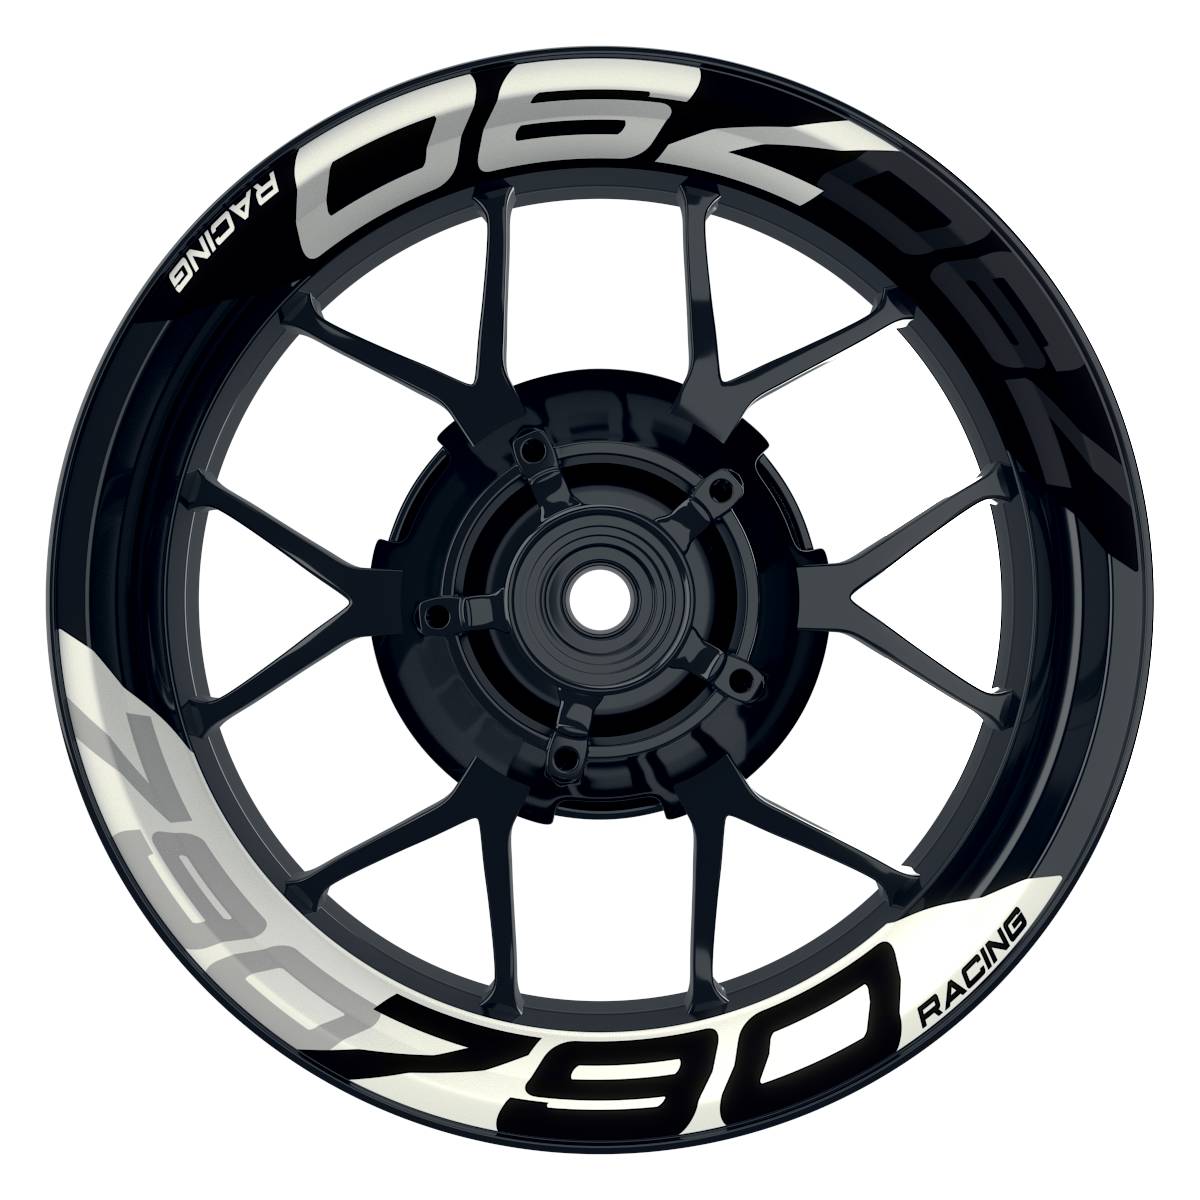 Wheelsticker Felgenaufkleber KTM Racing 790 halb halb V2 schwarz weiss Frontansicht